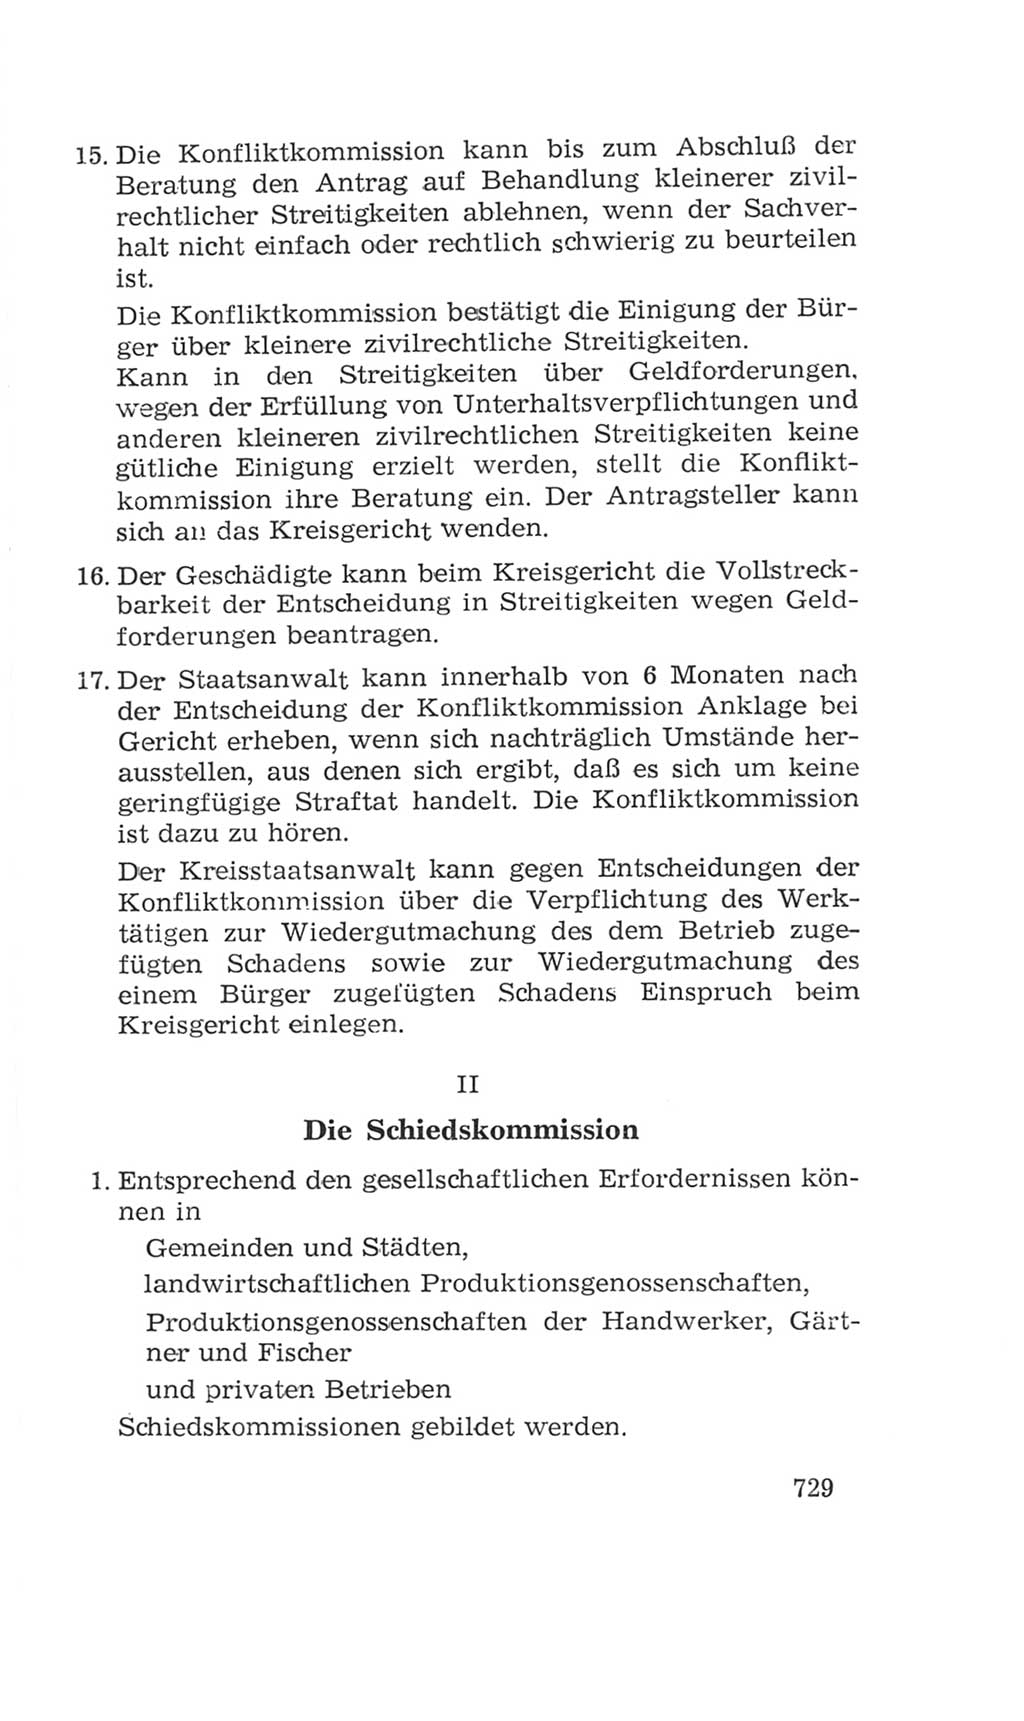 Volkskammer (VK) der Deutschen Demokratischen Republik (DDR), 4. Wahlperiode 1963-1967, Seite 729 (VK. DDR 4. WP. 1963-1967, S. 729)